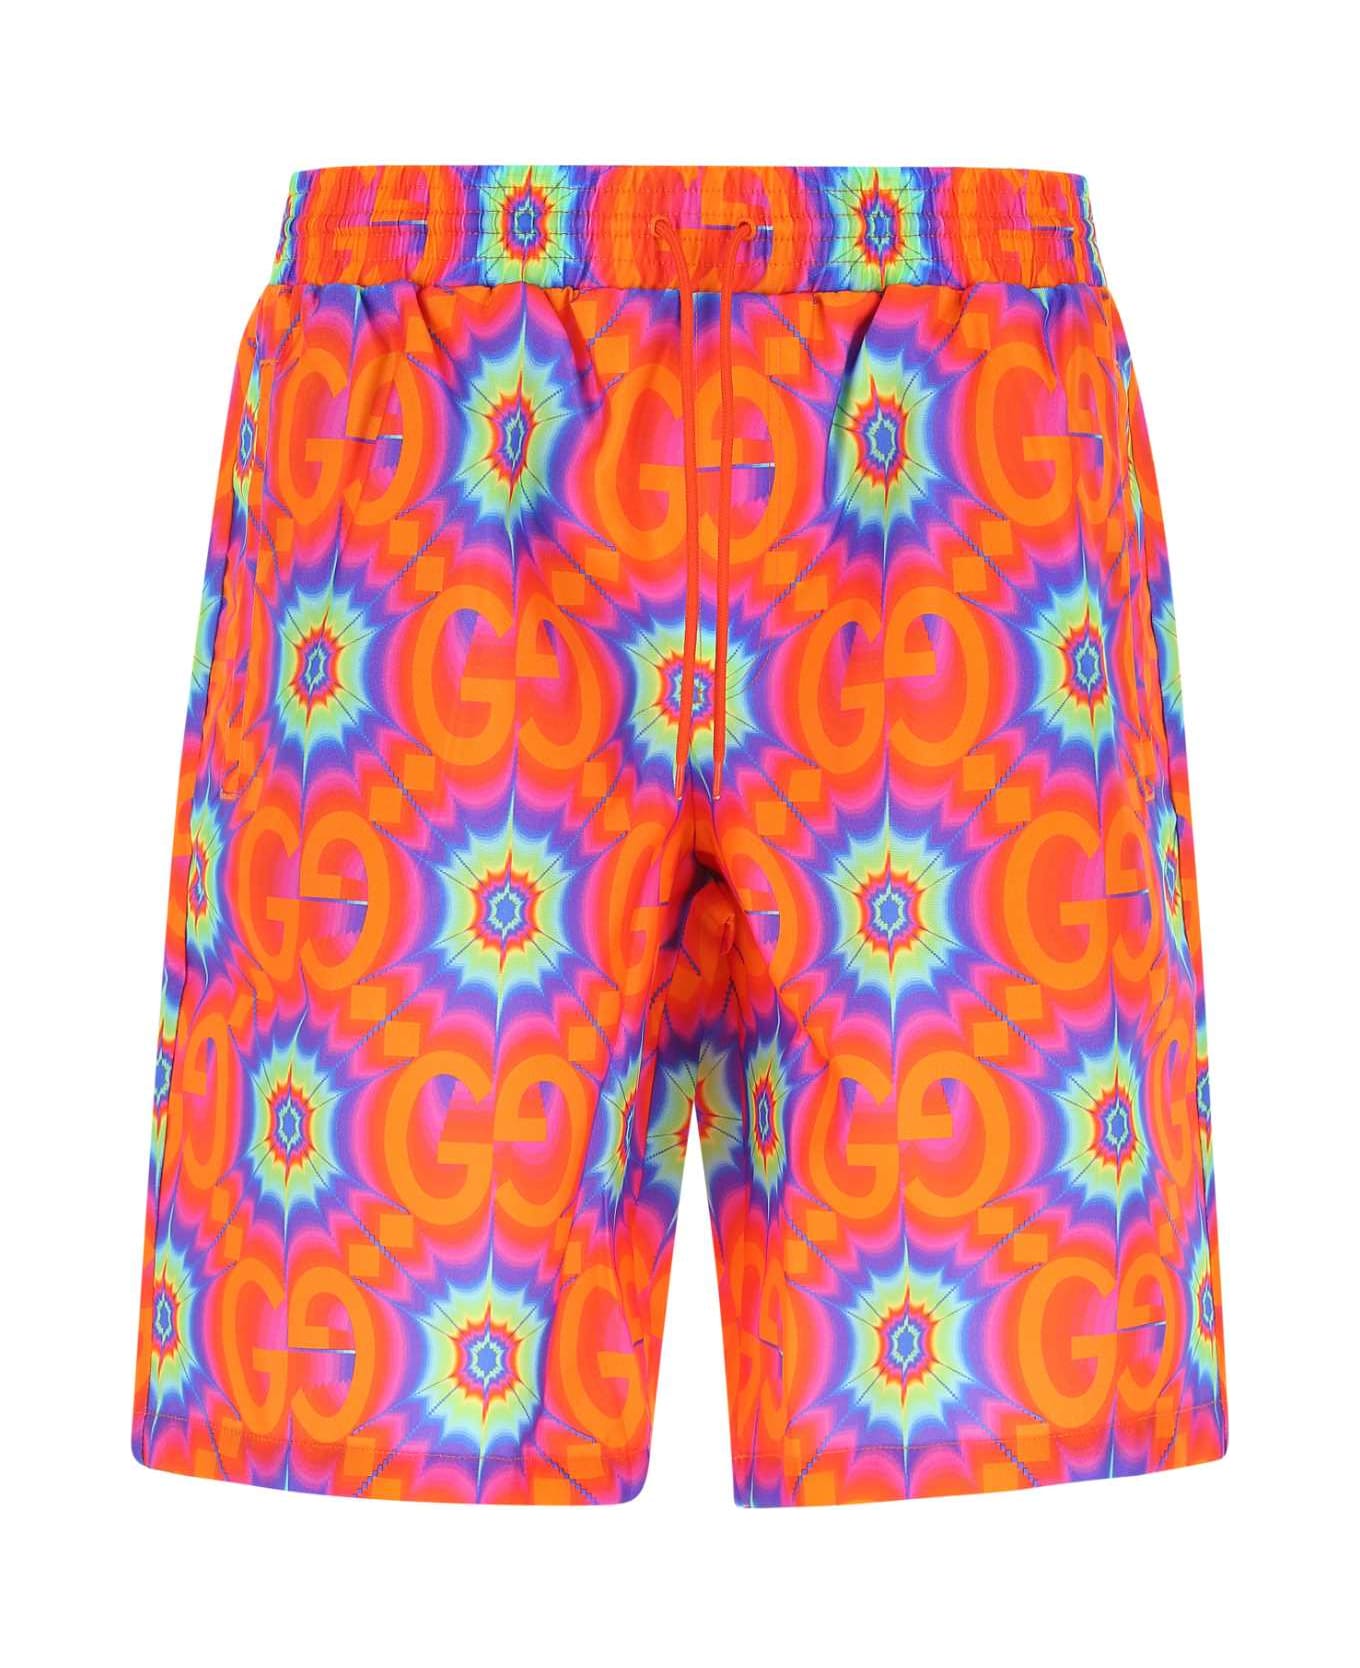 Gucci Printed Nylon Swimming Shorts - 7098